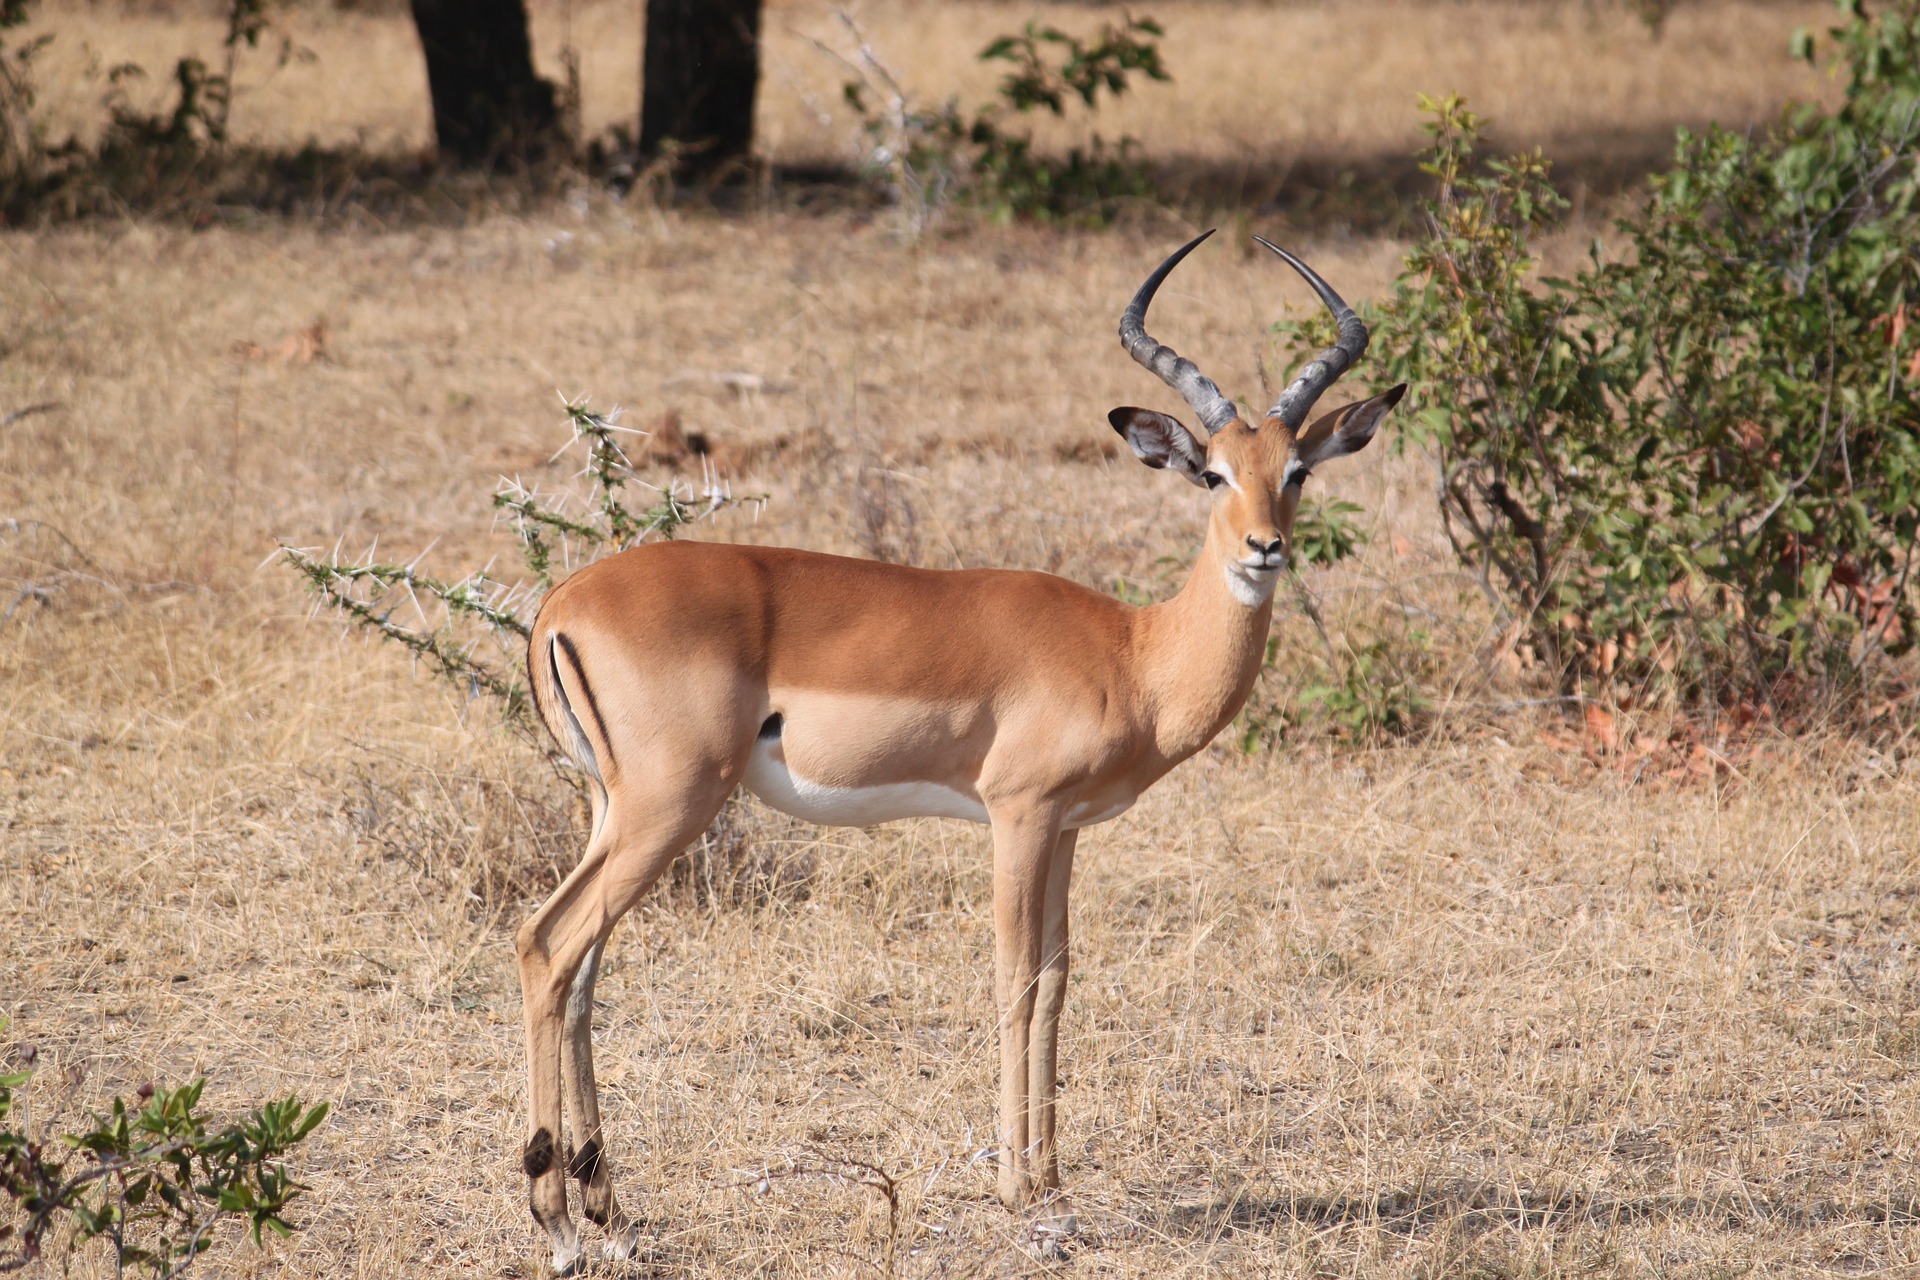 An impala grazing in a field